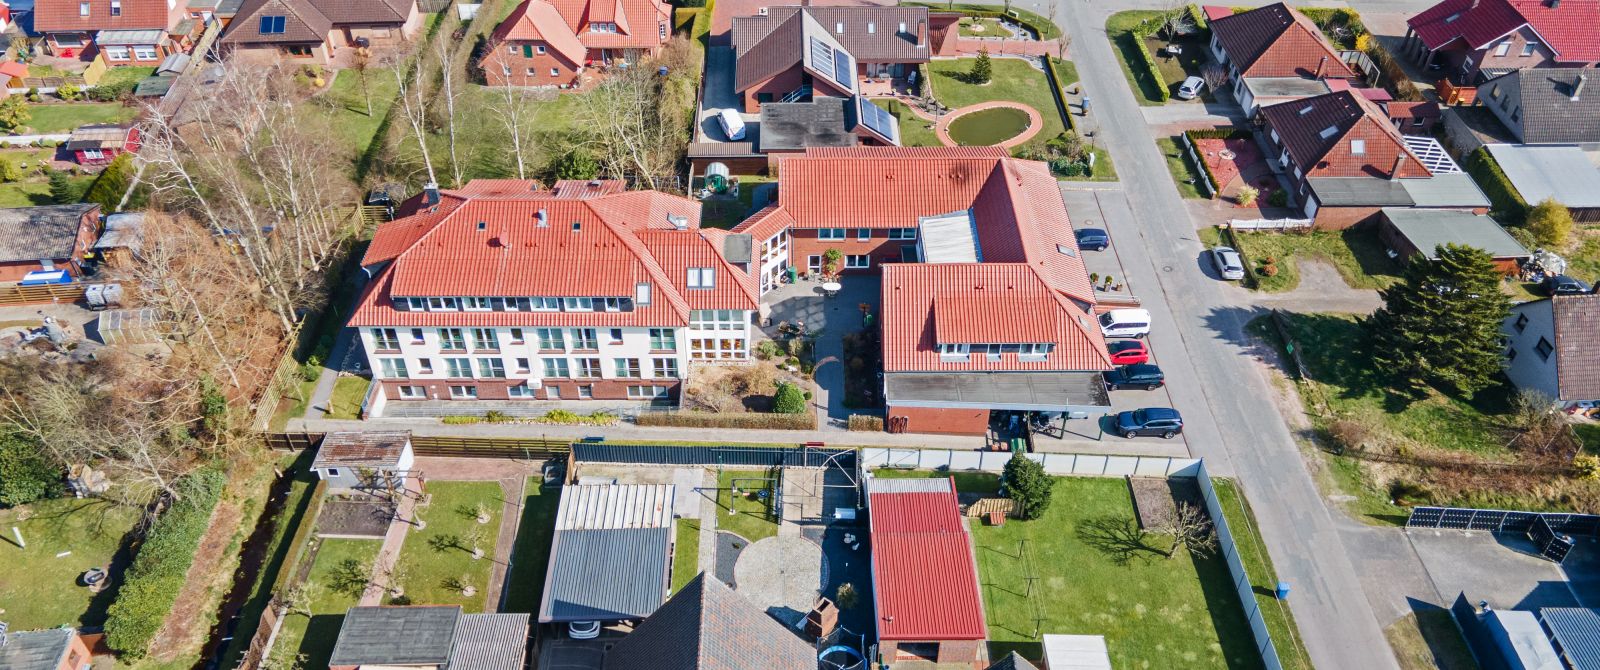 Pflegeheim Nordenham, Großraum Bremerhaven